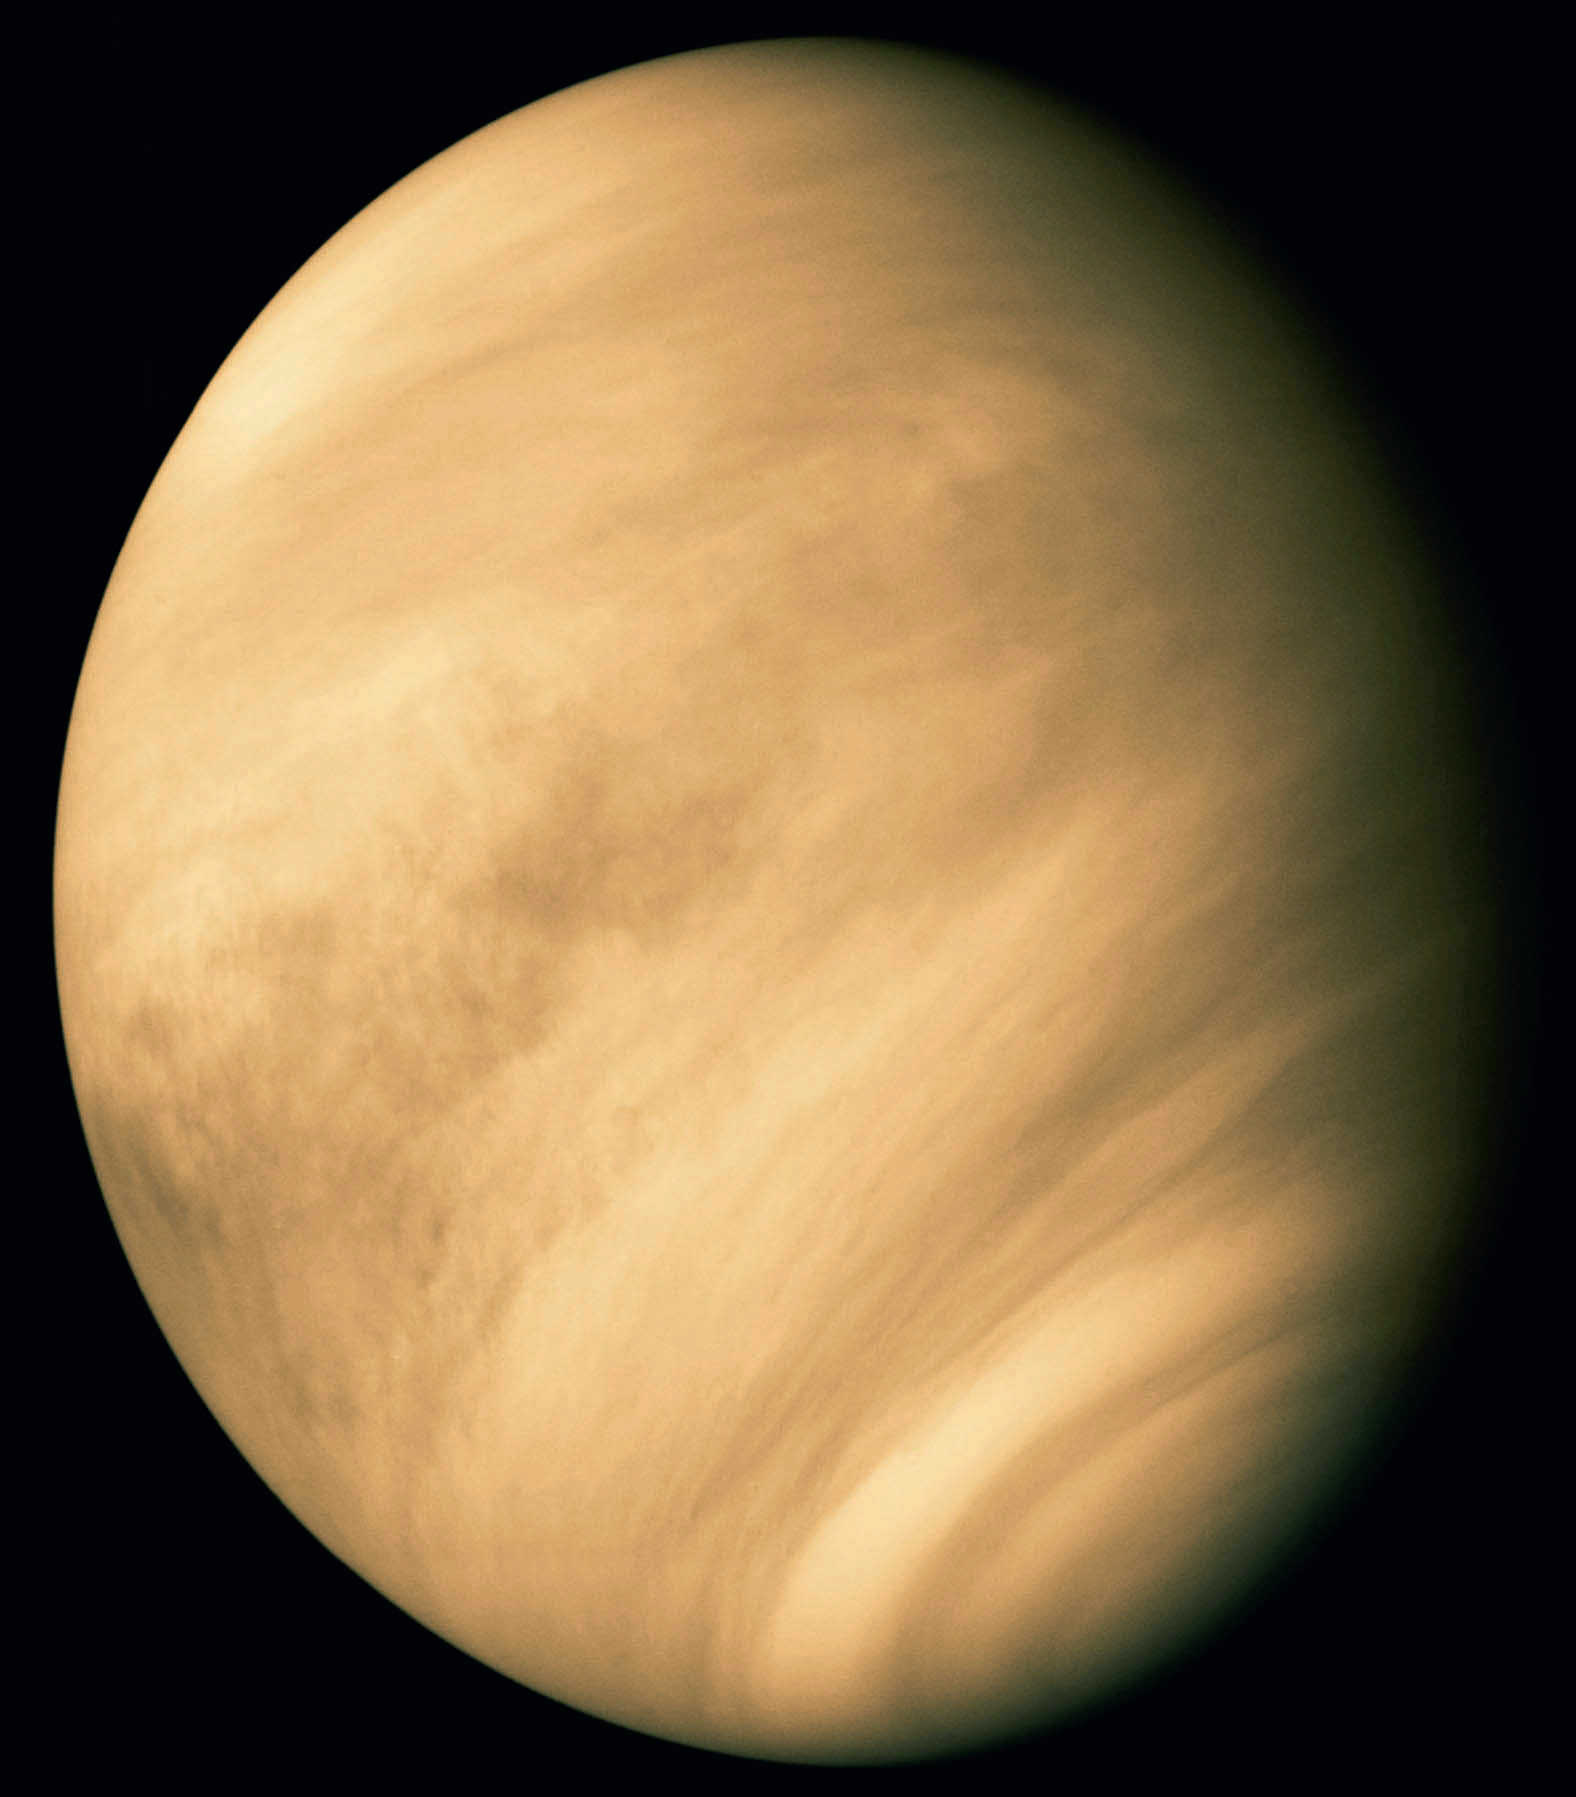 Venere vista dalla sonda americana Mariner 10 nel febbraio 1974. Le strutture nuvolose non sono visibili dalla Terra. Calvin J. Hamilton